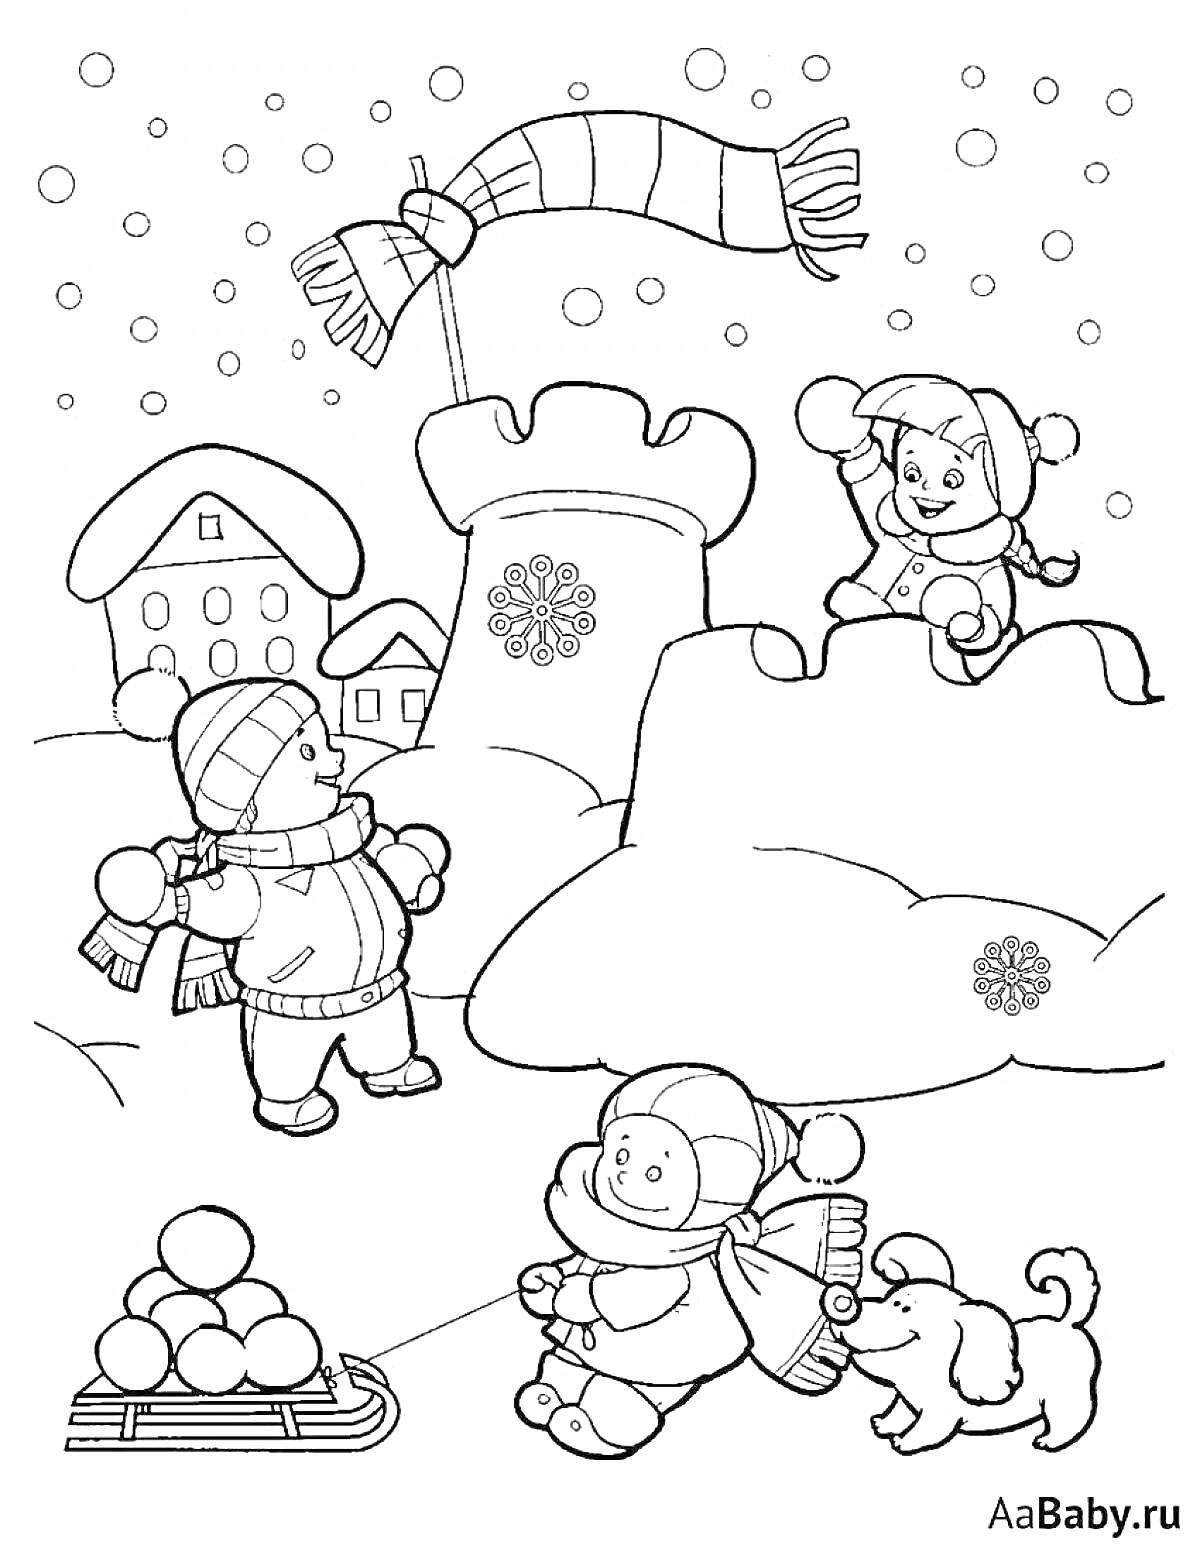 Раскраска Дети играют зимой в снежки рядом с ледяным замком и снежной крепостью, собака, санки с снежками